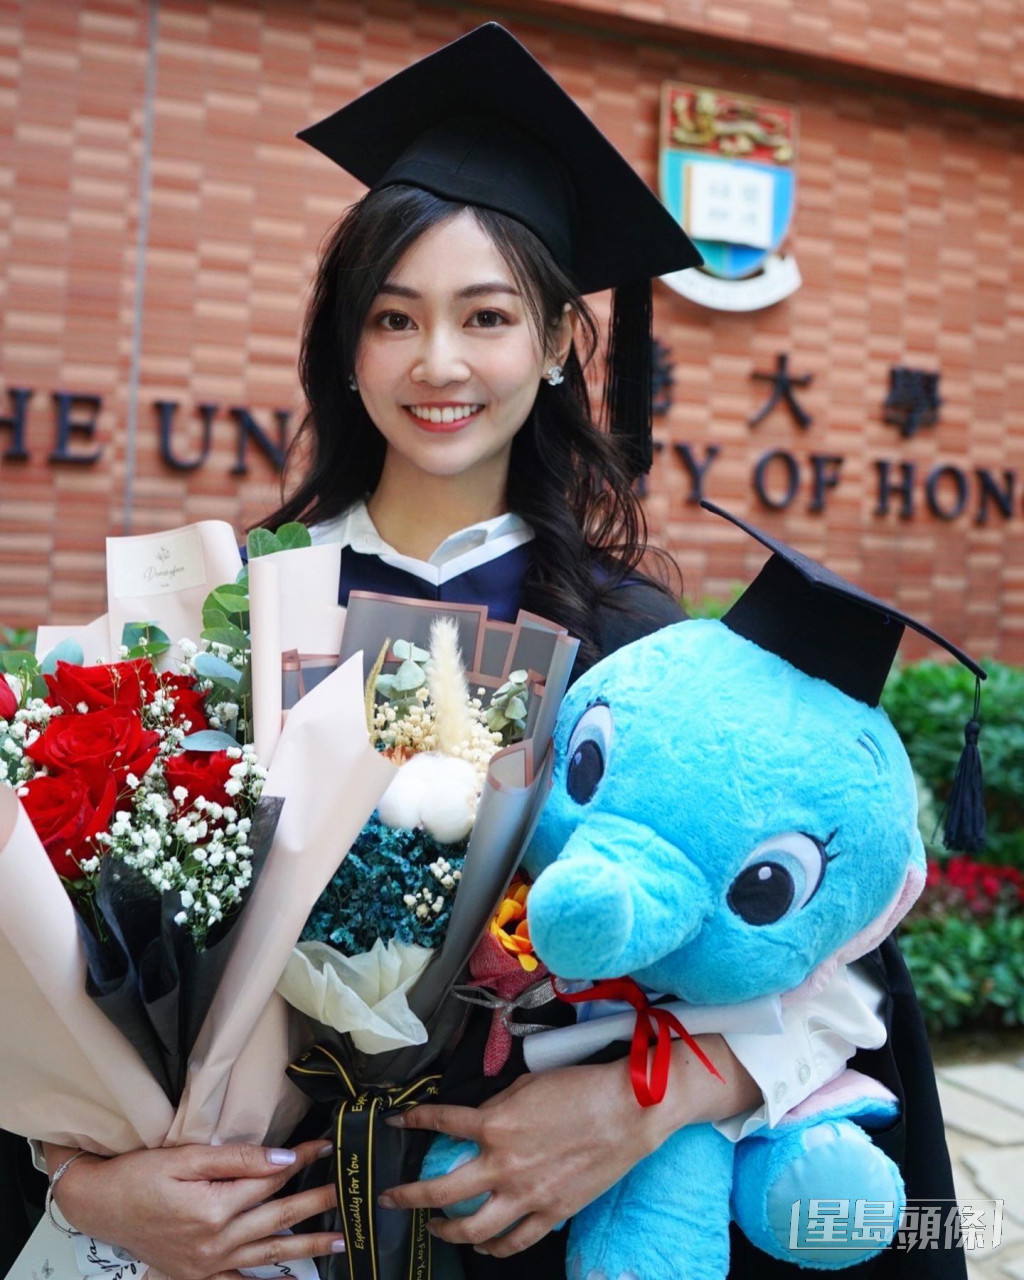 郭柏妍毕业于香港大学食物安全管理硕士课程，是该届港姐高材生之一。